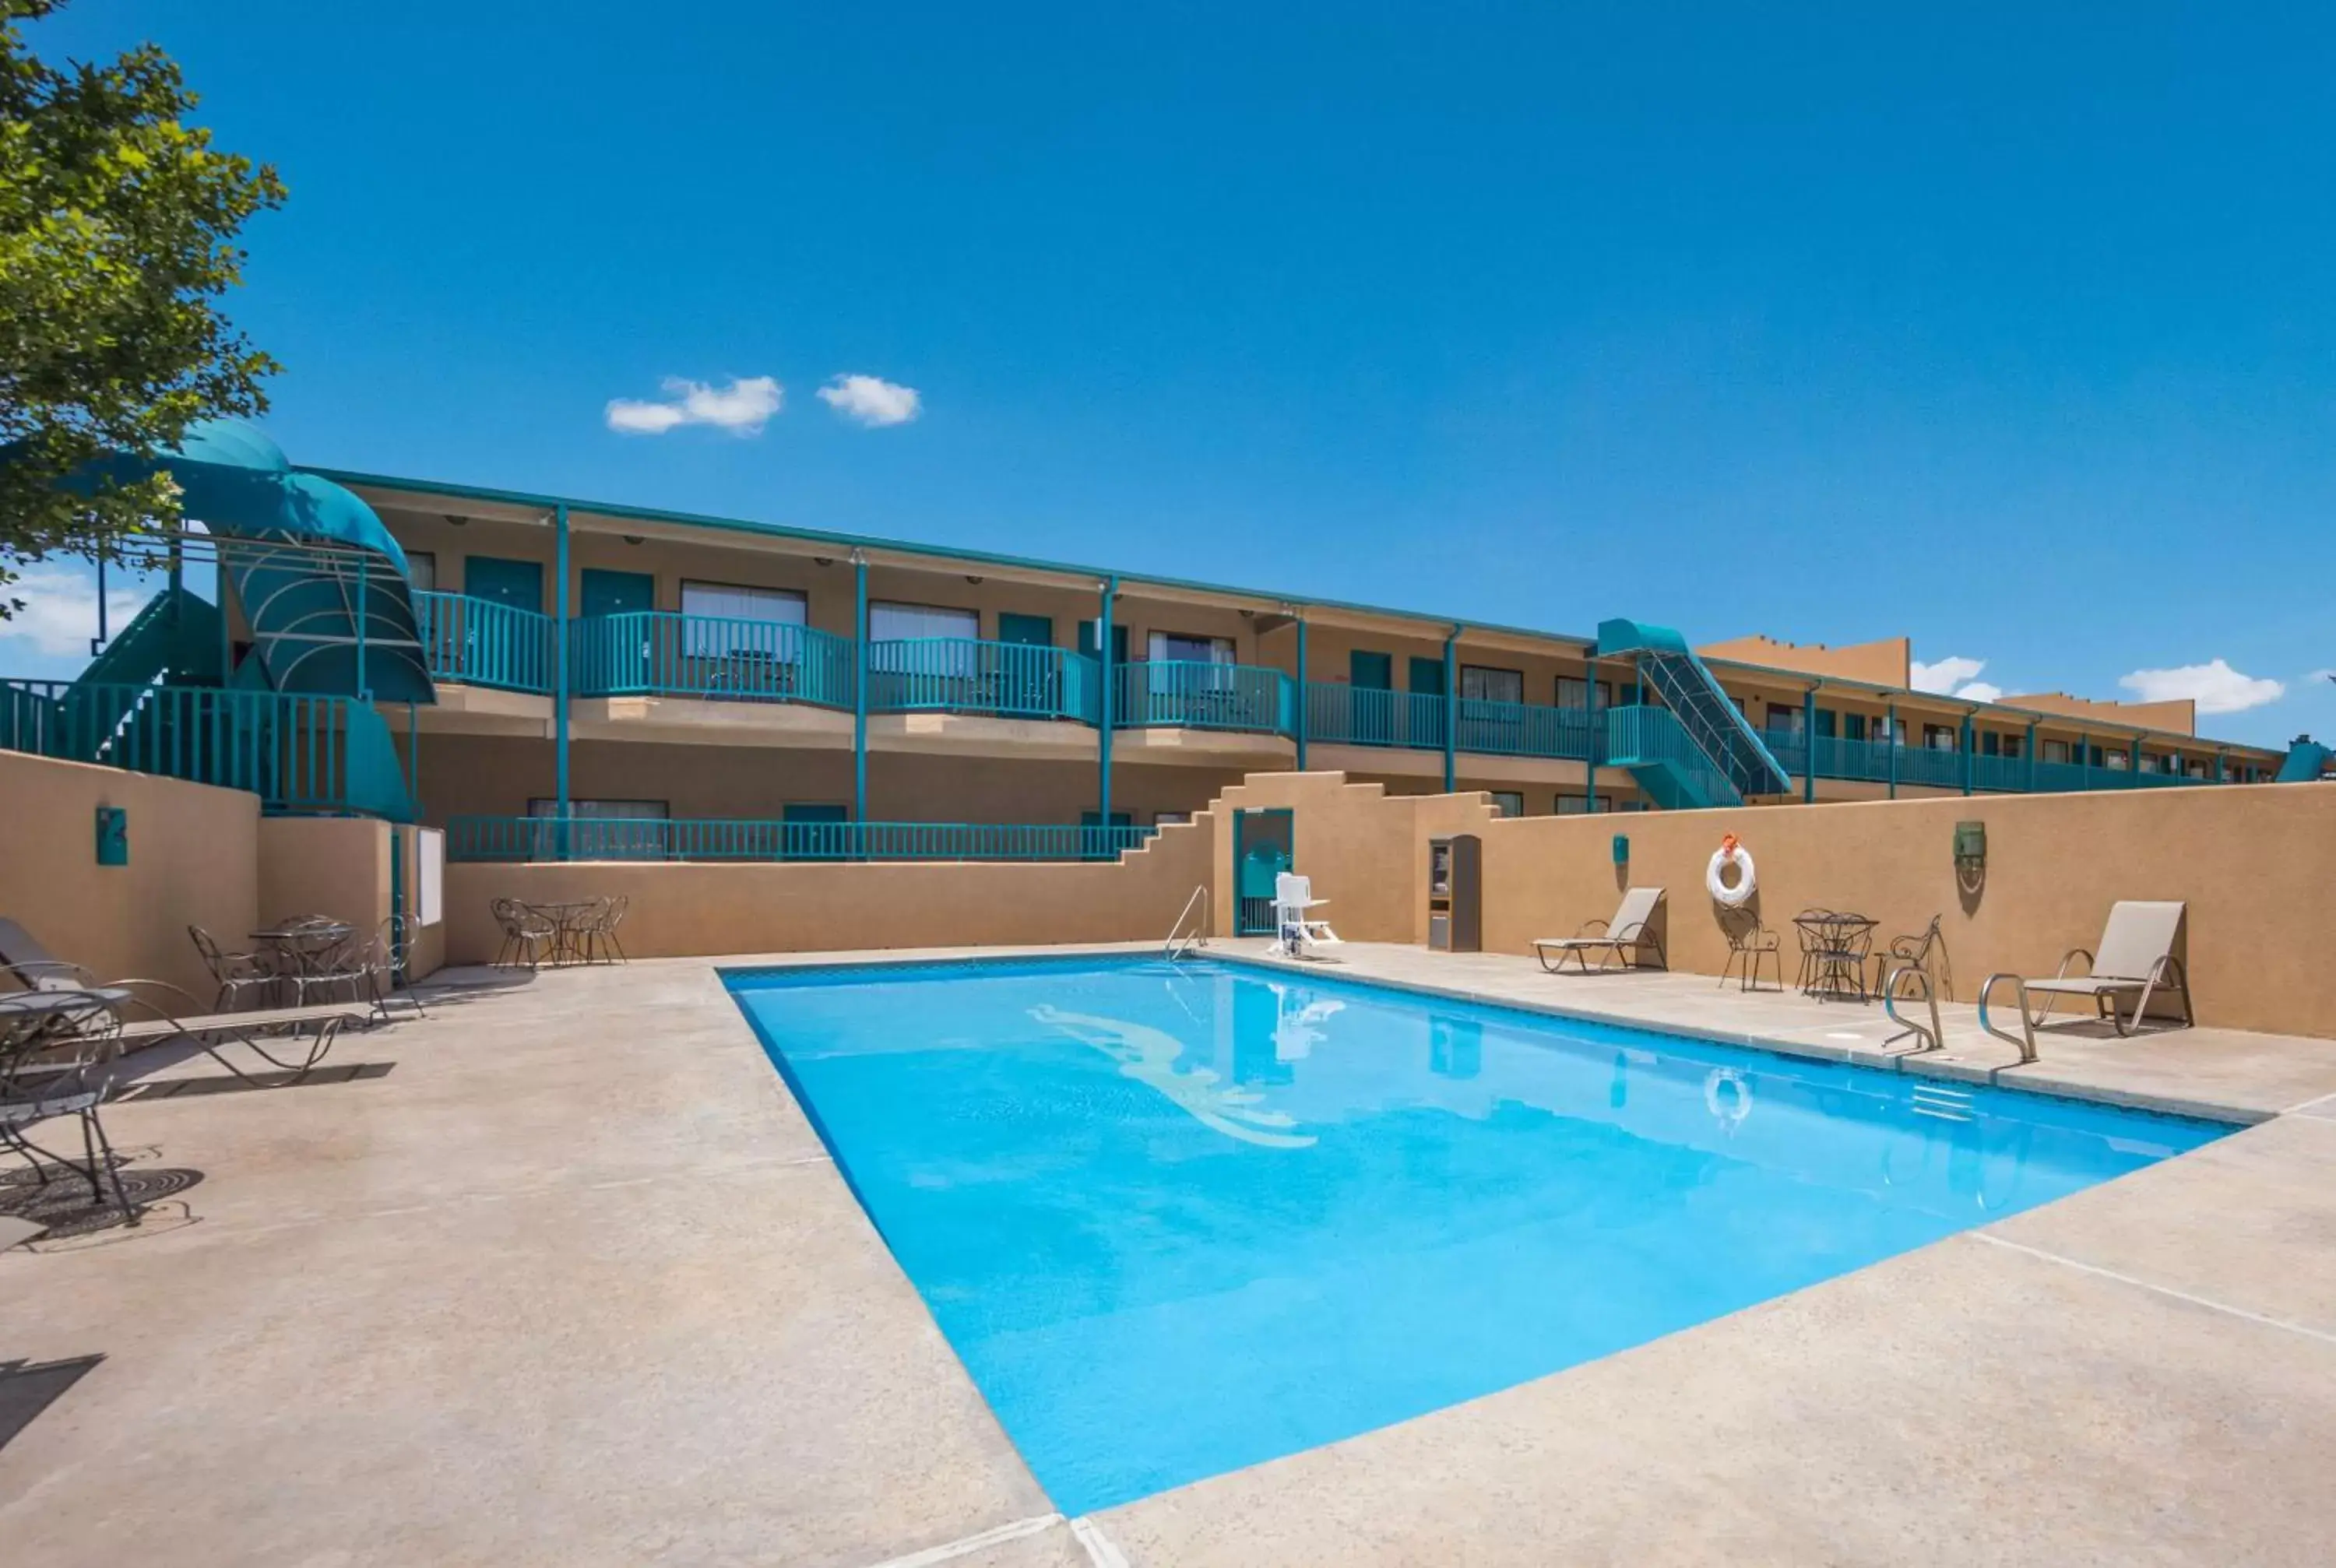 Pool view, Property Building in Best Western Kokopelli Lodge